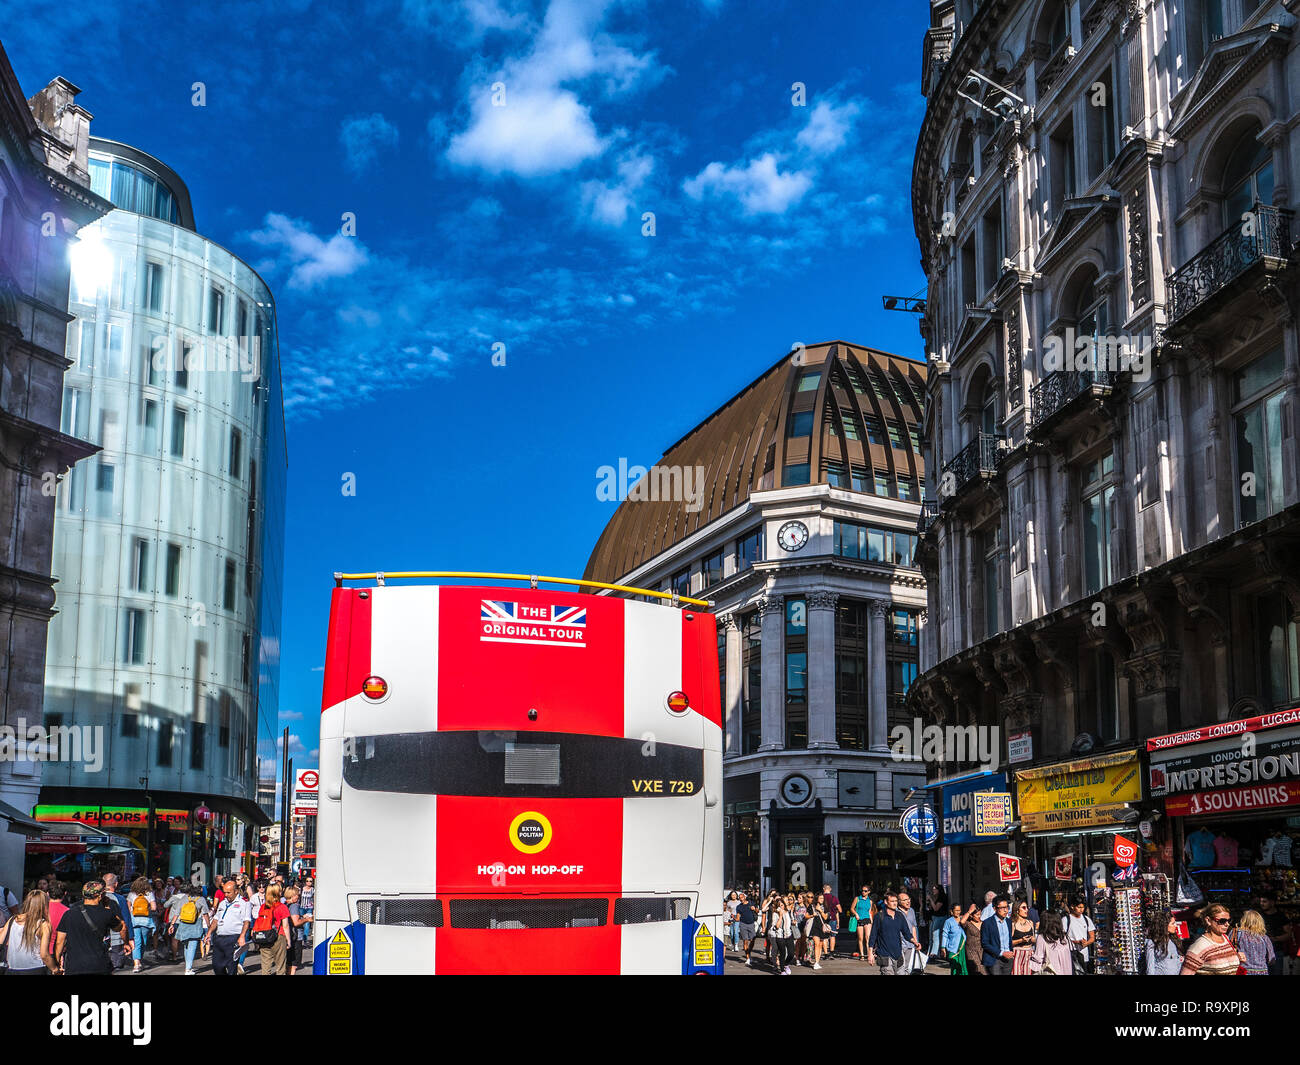 Tourisme à Londres - Bus touristique près de Piccadilly Circus, au centre de Londres Banque D'Images